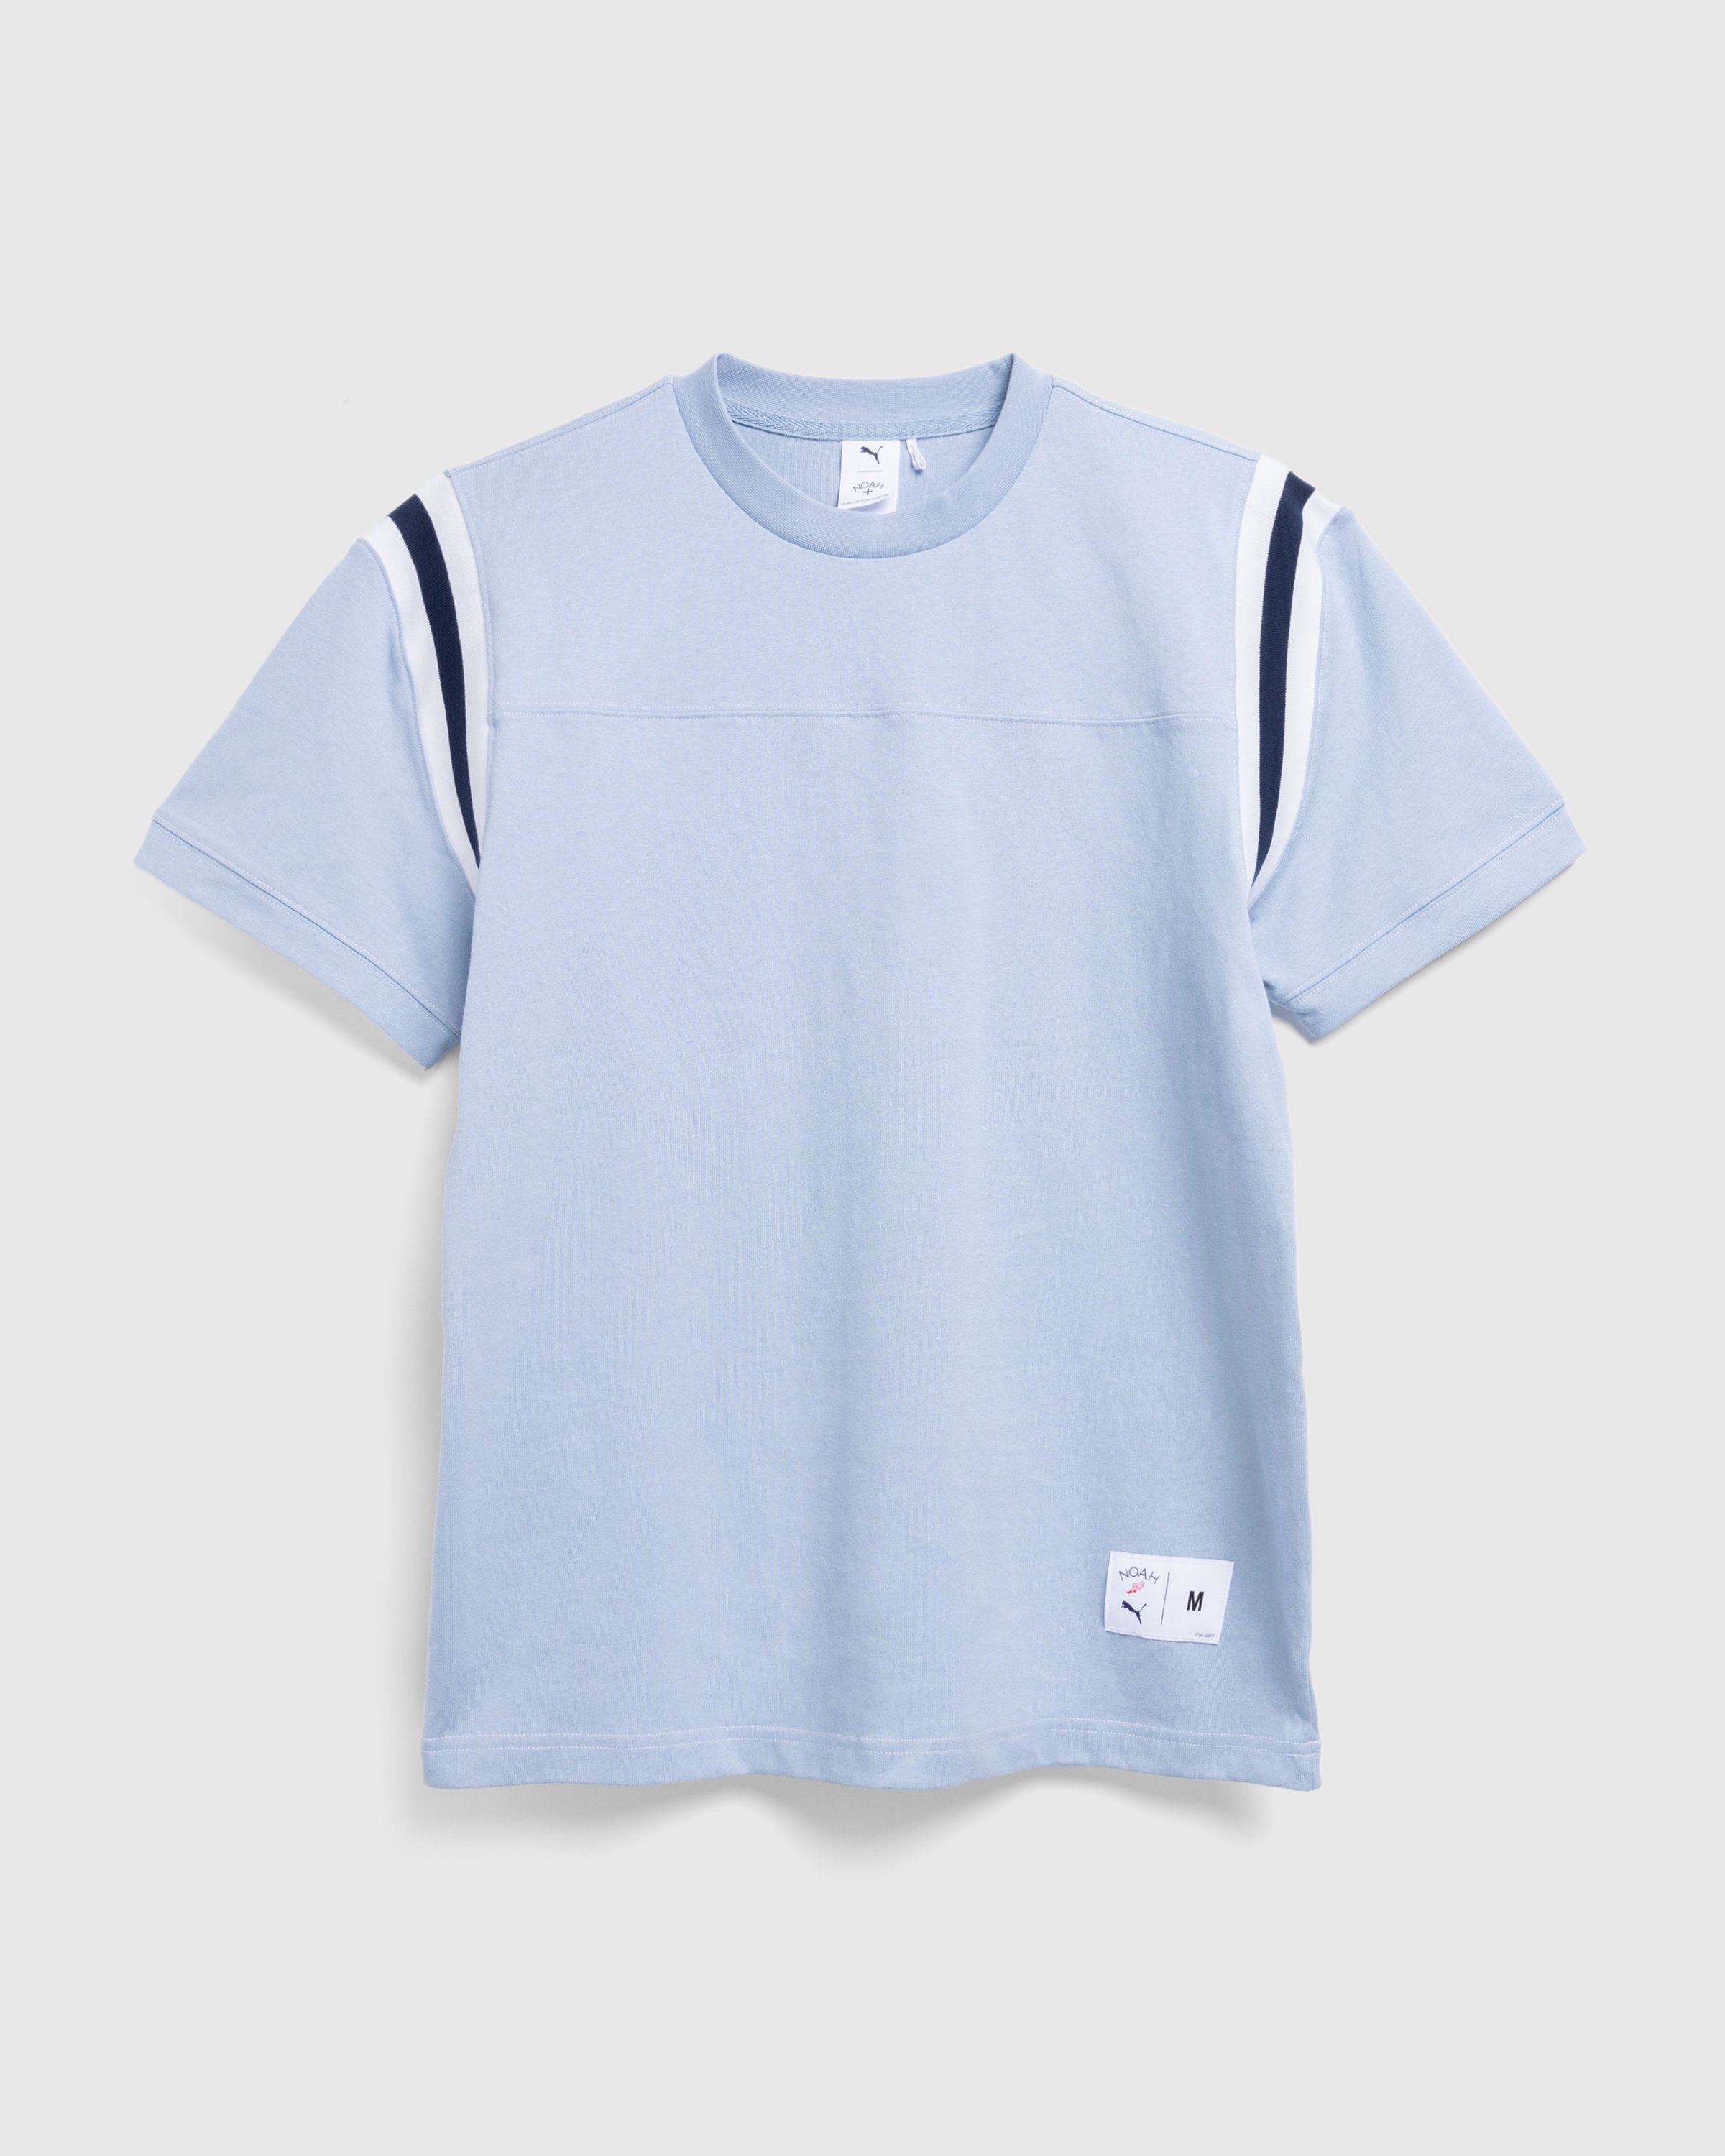 Puma x Noah - Jet Sleeve T-Shirt Blue Wash - Clothing - Blue - Image 1